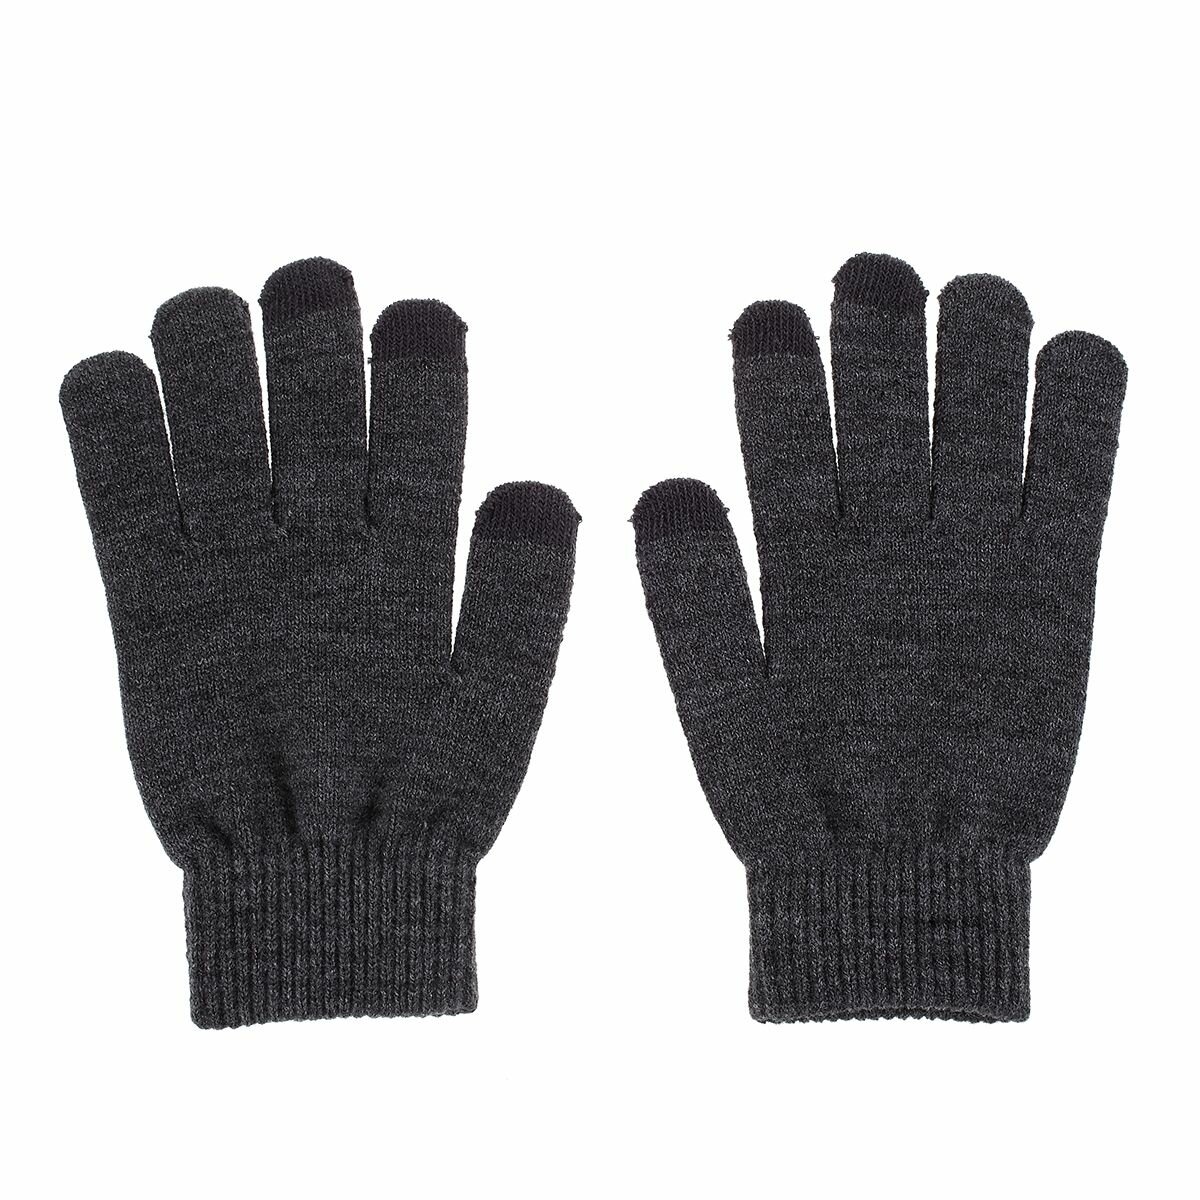 Зимние женские вязаные перчатки для работы с сенсорным экраном - темно-серые 